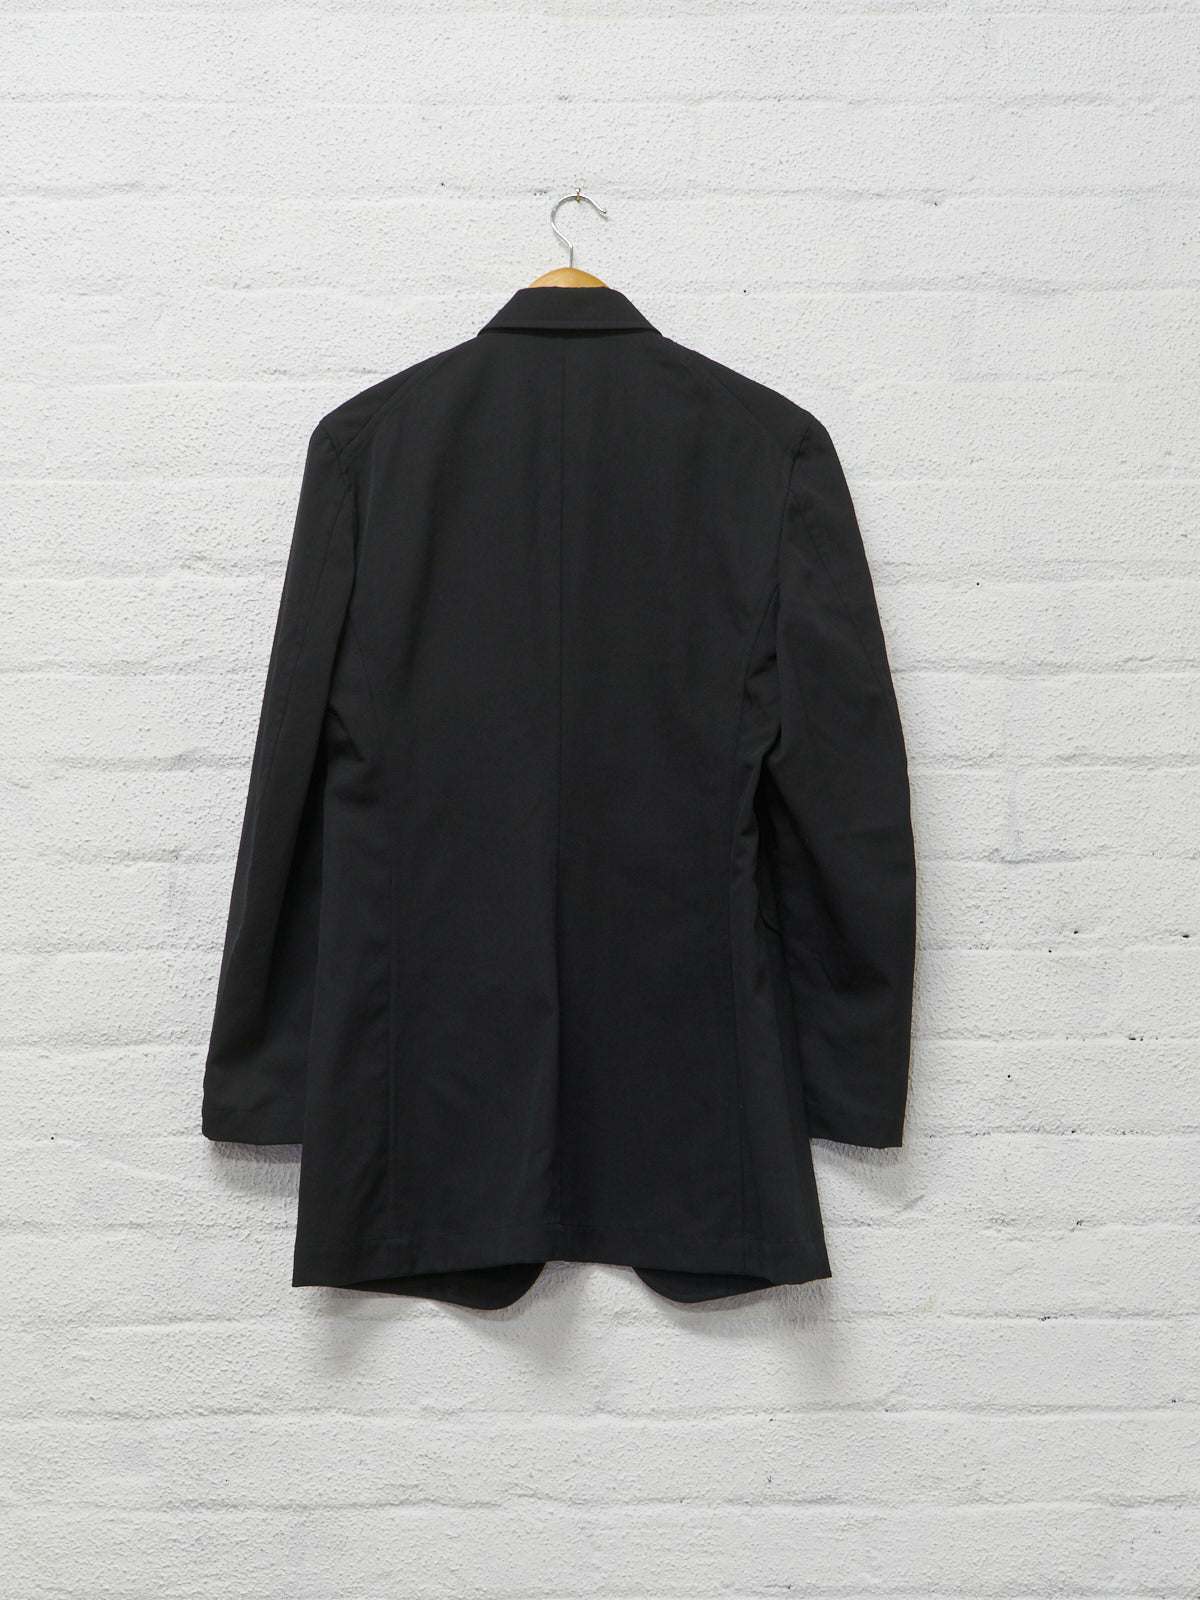 Comme des Garcons 1997 black wool peak lapel patch pocket blazer - womens S M